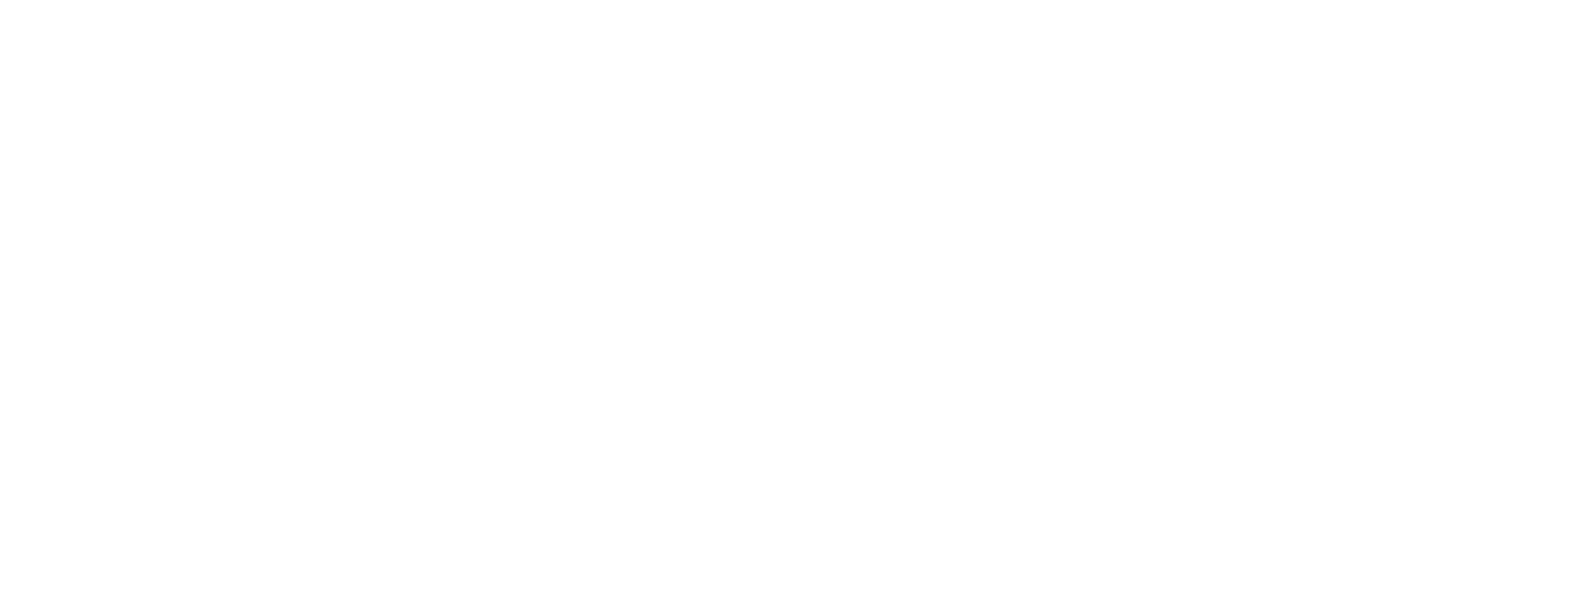 General Dynamics logo pour fonds sombres (PNG transparent)